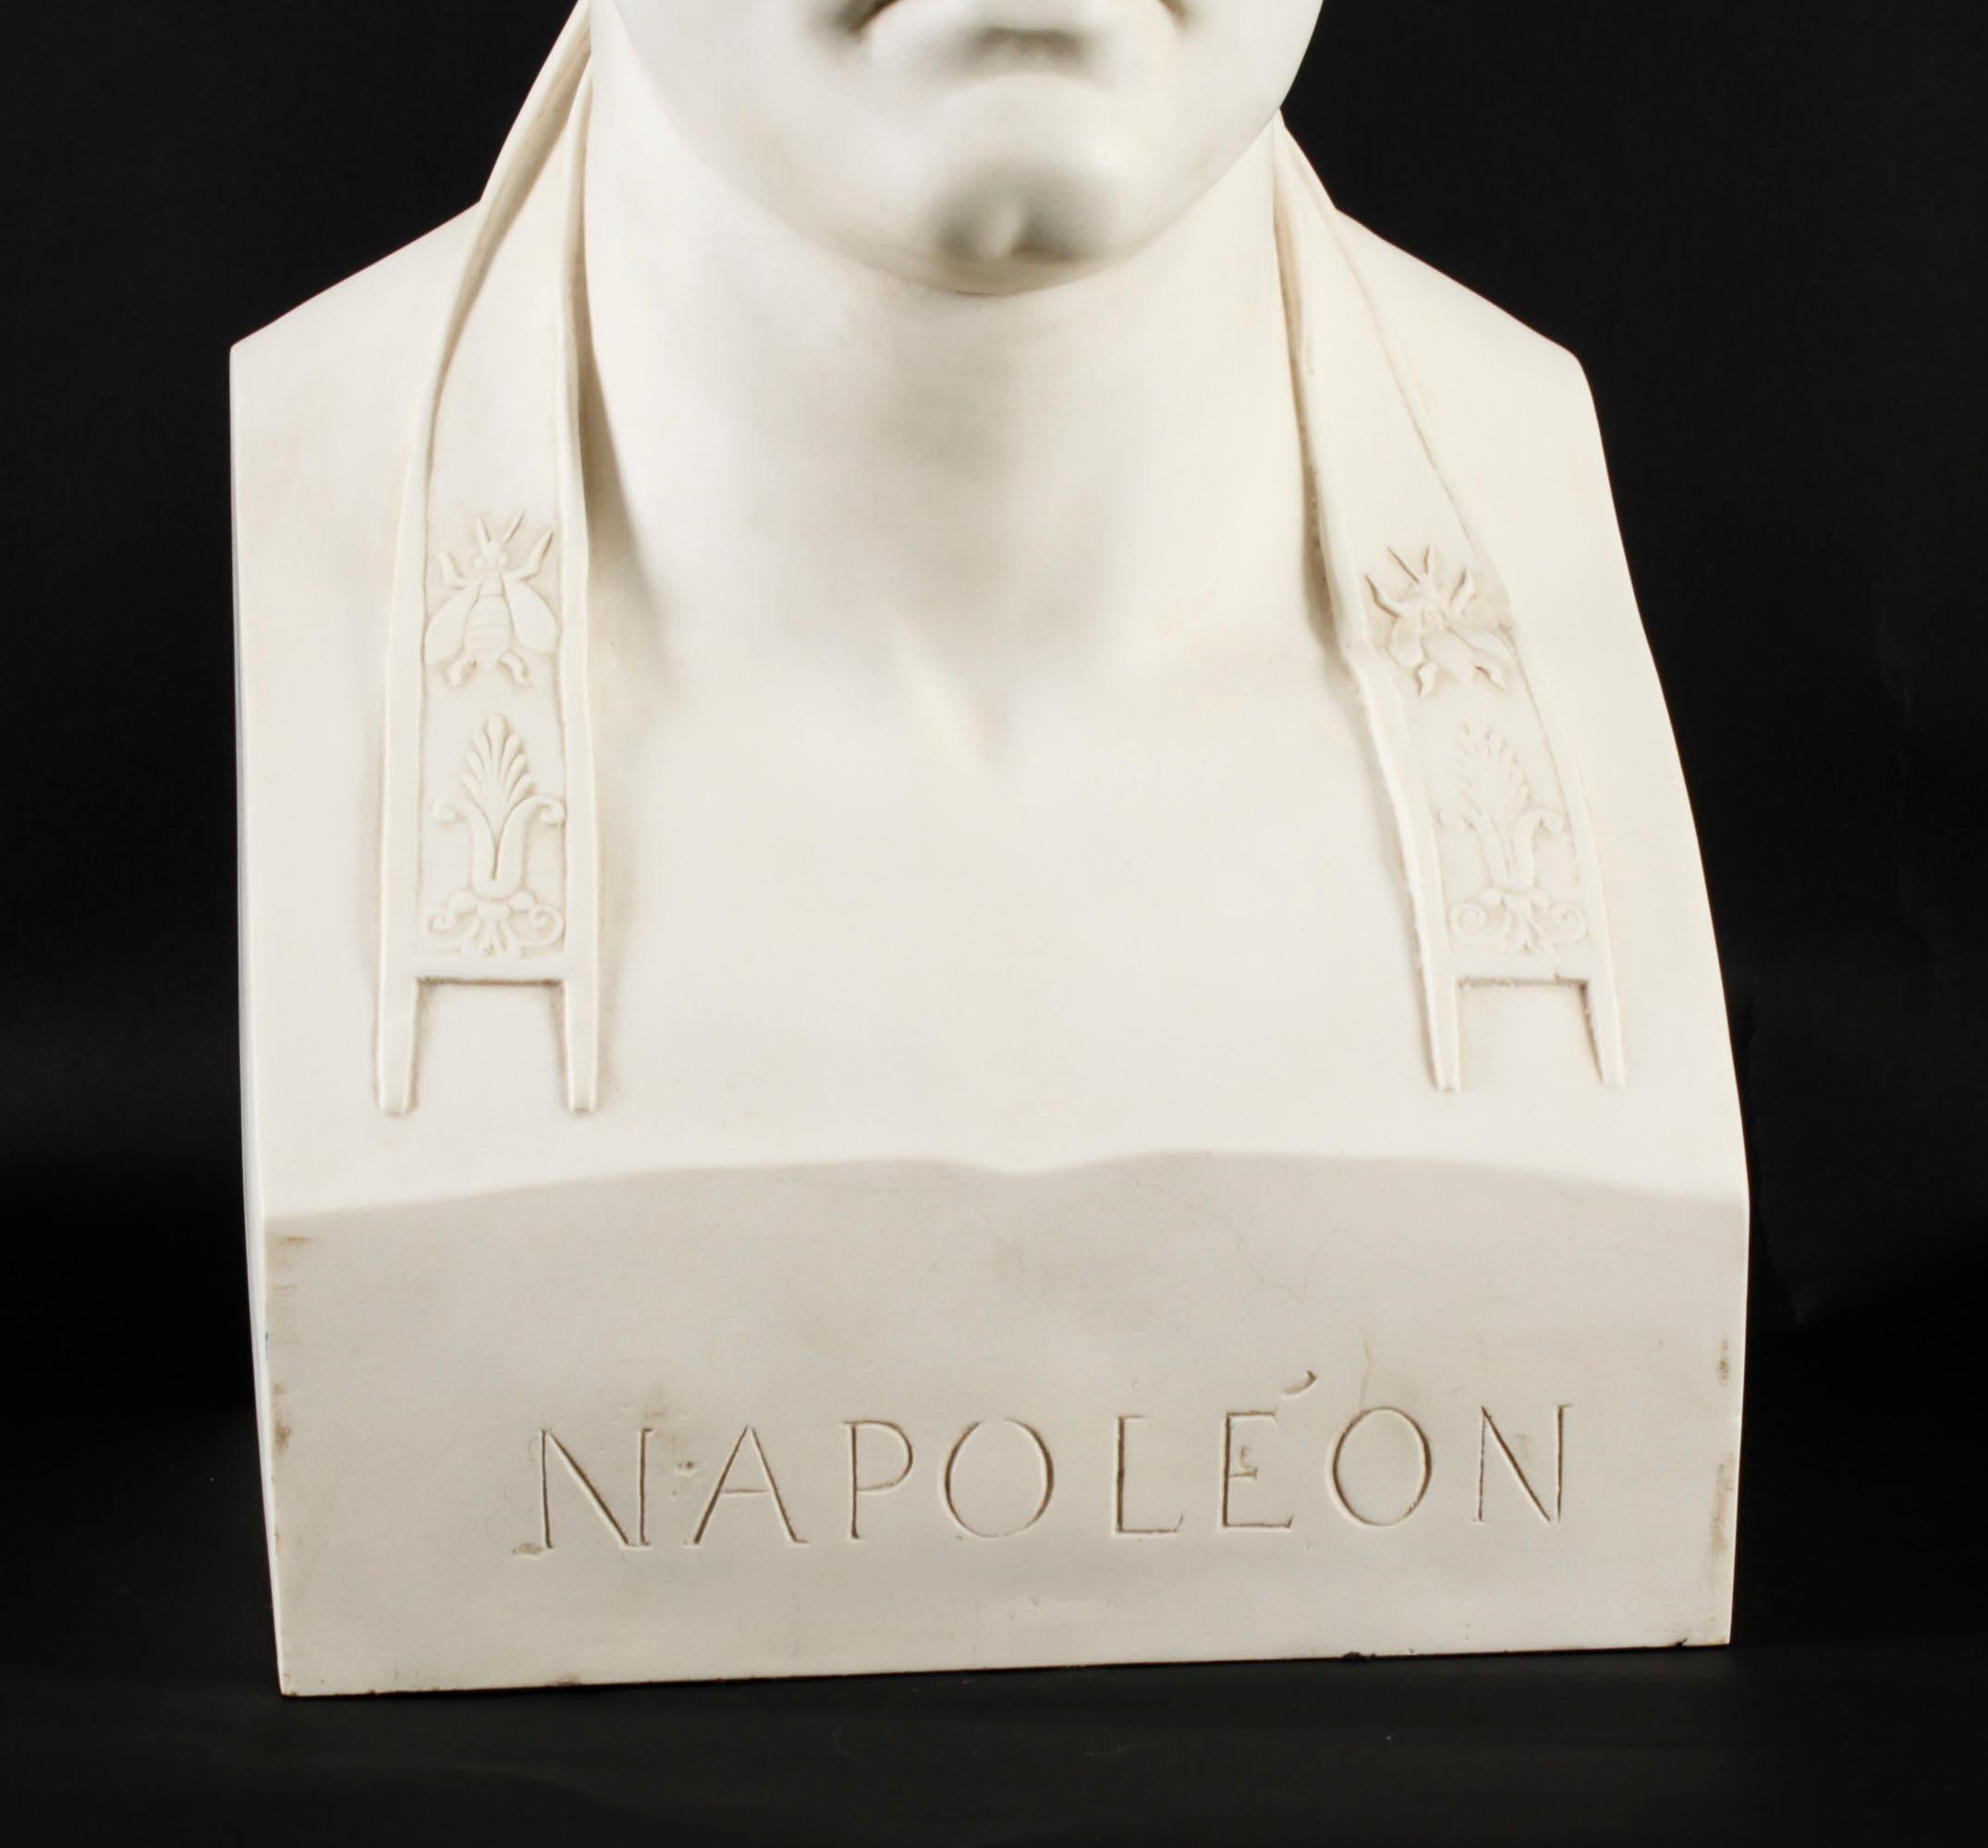 Eine schöne Anthony-Whiting-Büste aus weißem Kompositmarmor von Napoleon Bonaparte als Cäsar, die aus dem letzten Viertel des 20. Jahrhunderts stammt.

Napoleon ist mit einem Lorbeerkranz auf dem Kopf dargestellt, die Büste ist auf der Rückseite mit